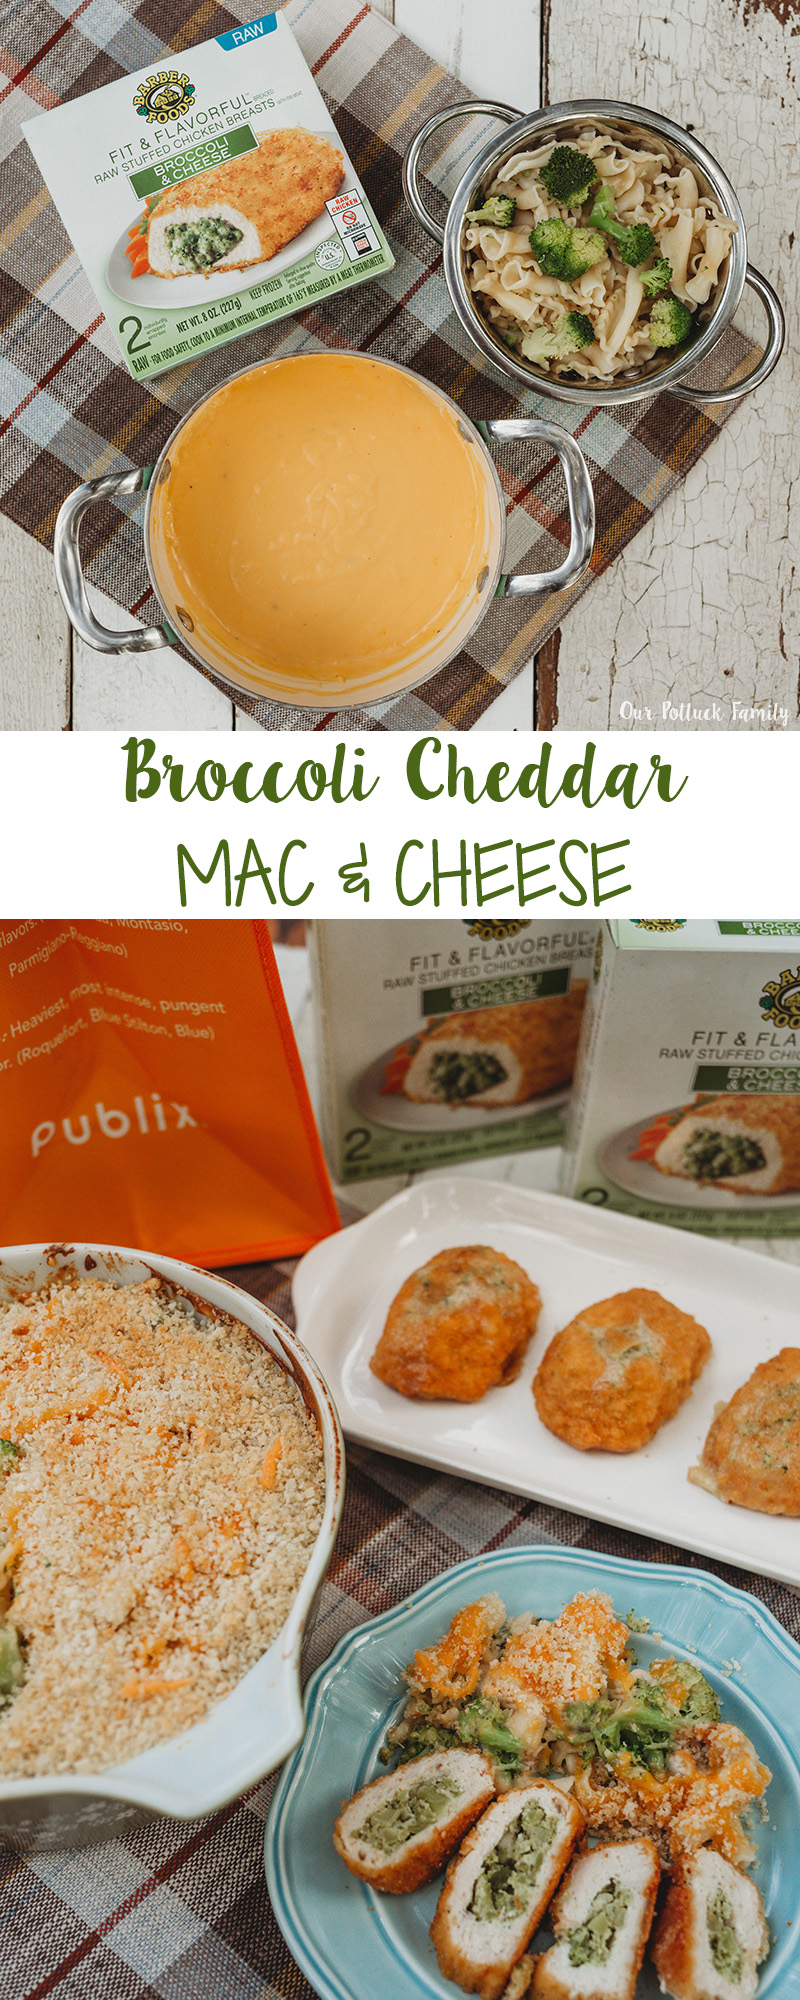 Broccoli Cheddar Mac & Cheese